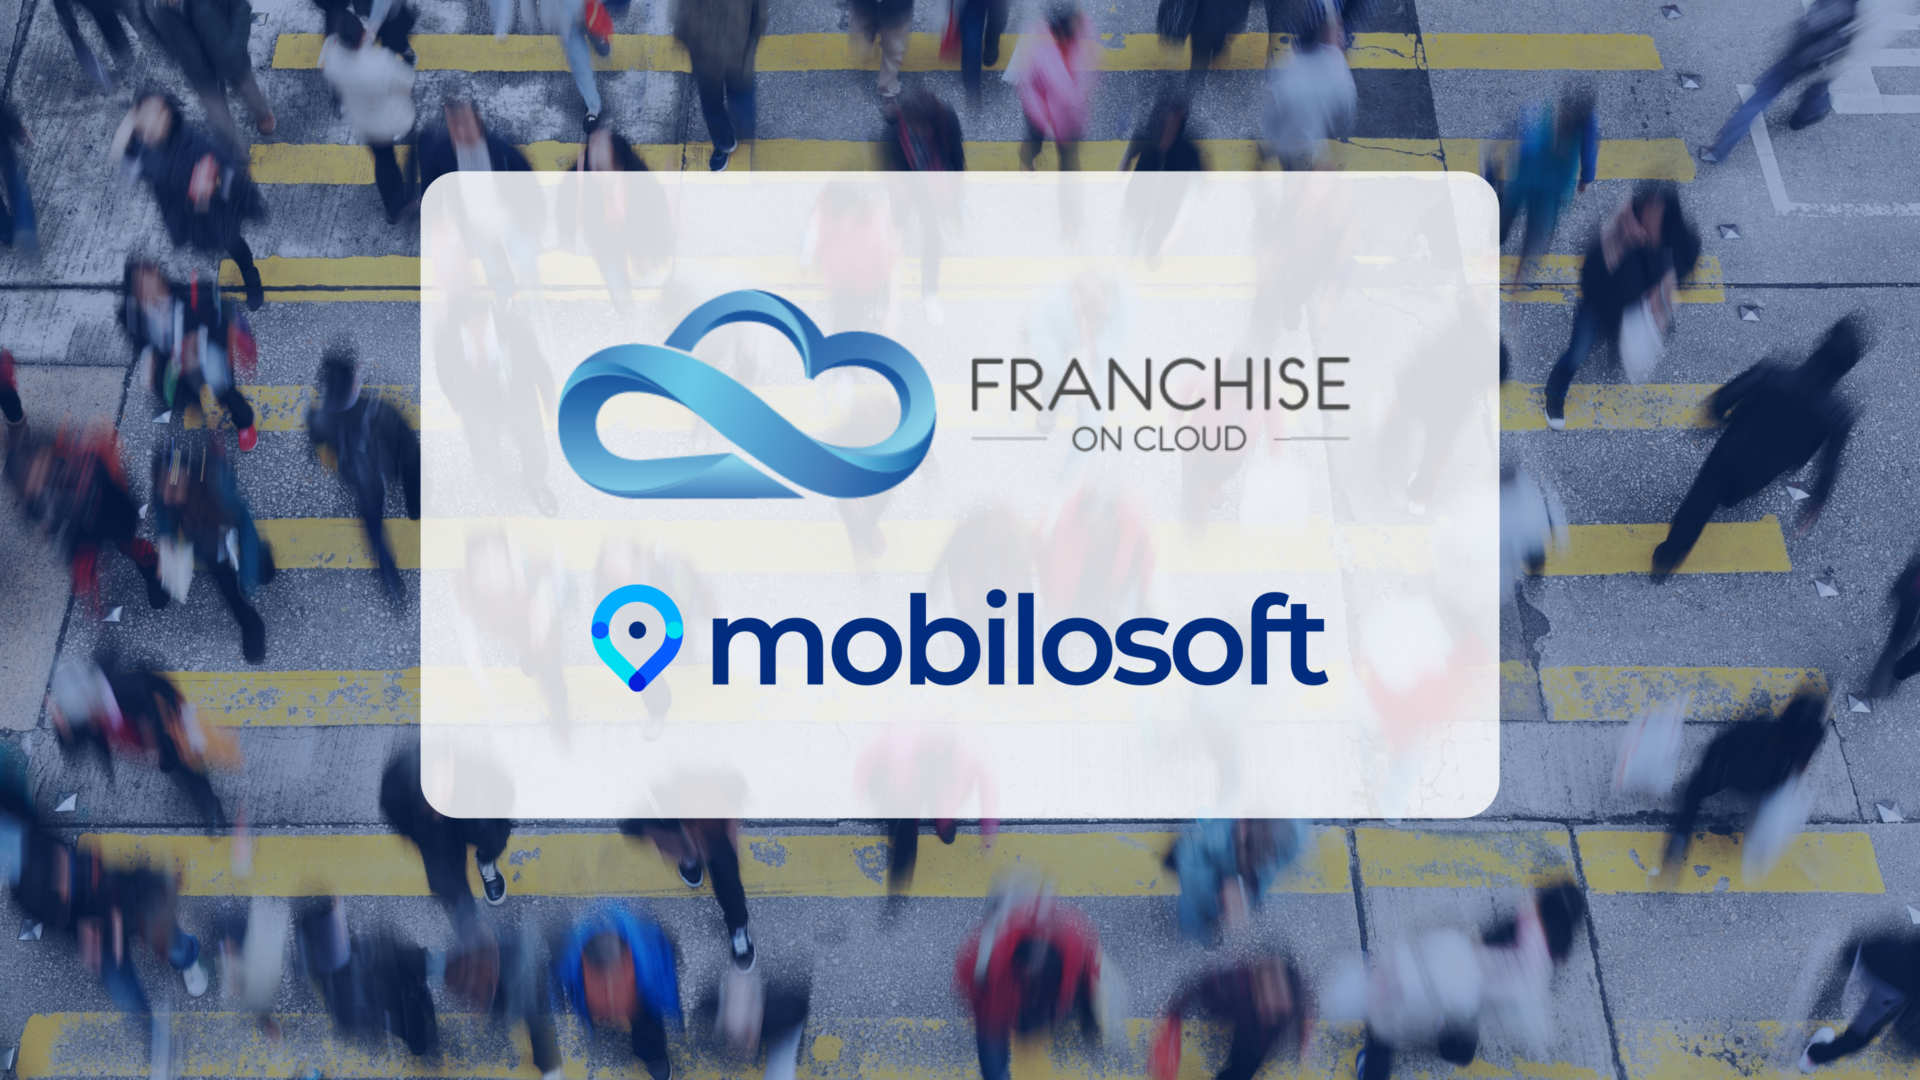 Découvrez notre nouveau partenaire Franchise on Cloud, spécialiste en solutions digitales pour les réseaux de franchises. À travers ce partenariat Mobilosoft vient compléter l’offre Franchise on Cloud avec nos solutions de marketing digital local, afin de mener plus de clients en point de vente !